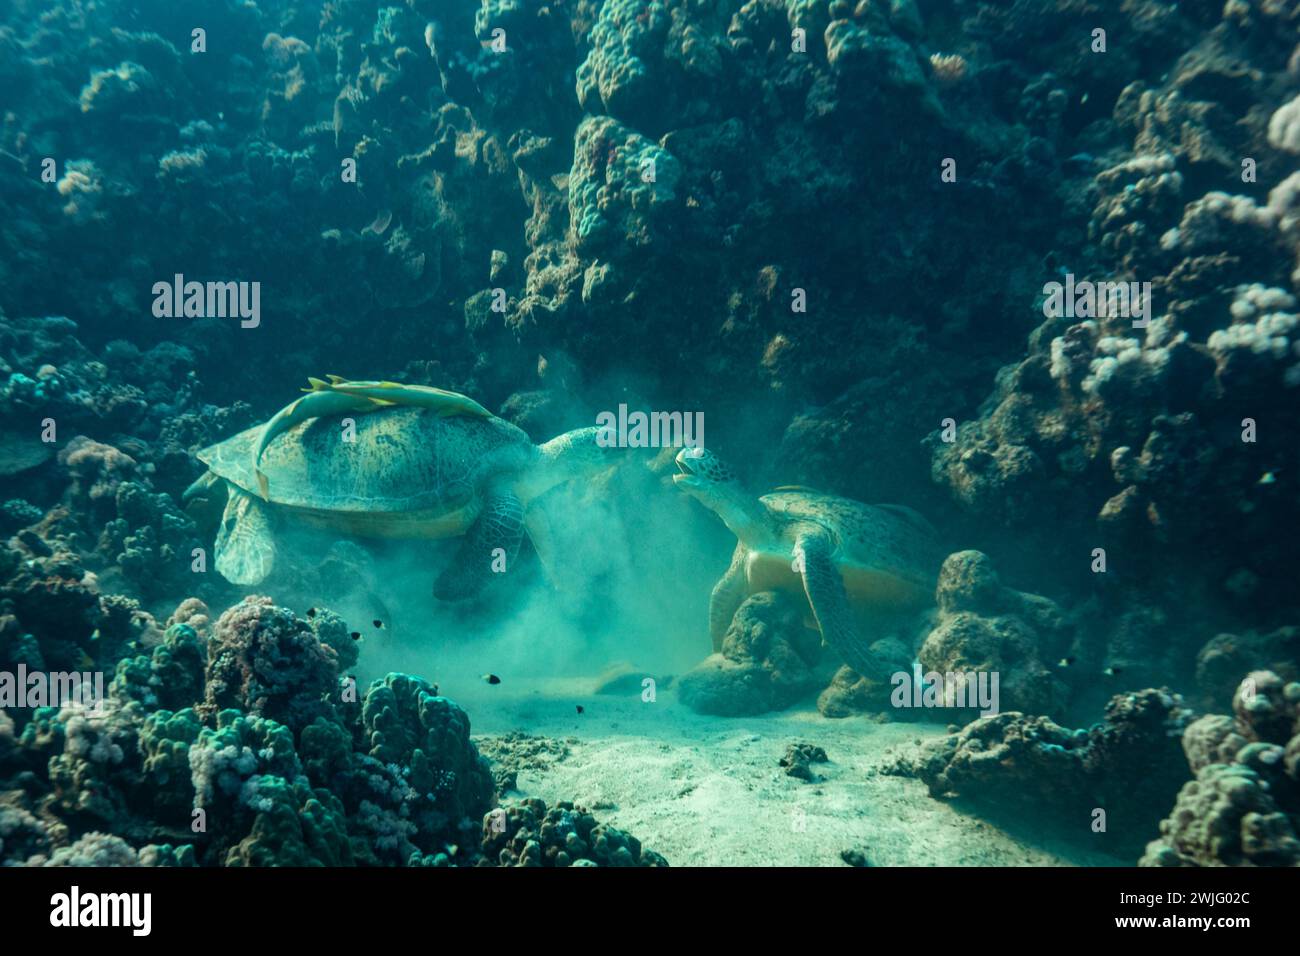 2 tartarughe marine verdi, Chelonia mydas, combattono per un posto dove dormire nella crevice di una barriera corallina tropicale Foto Stock